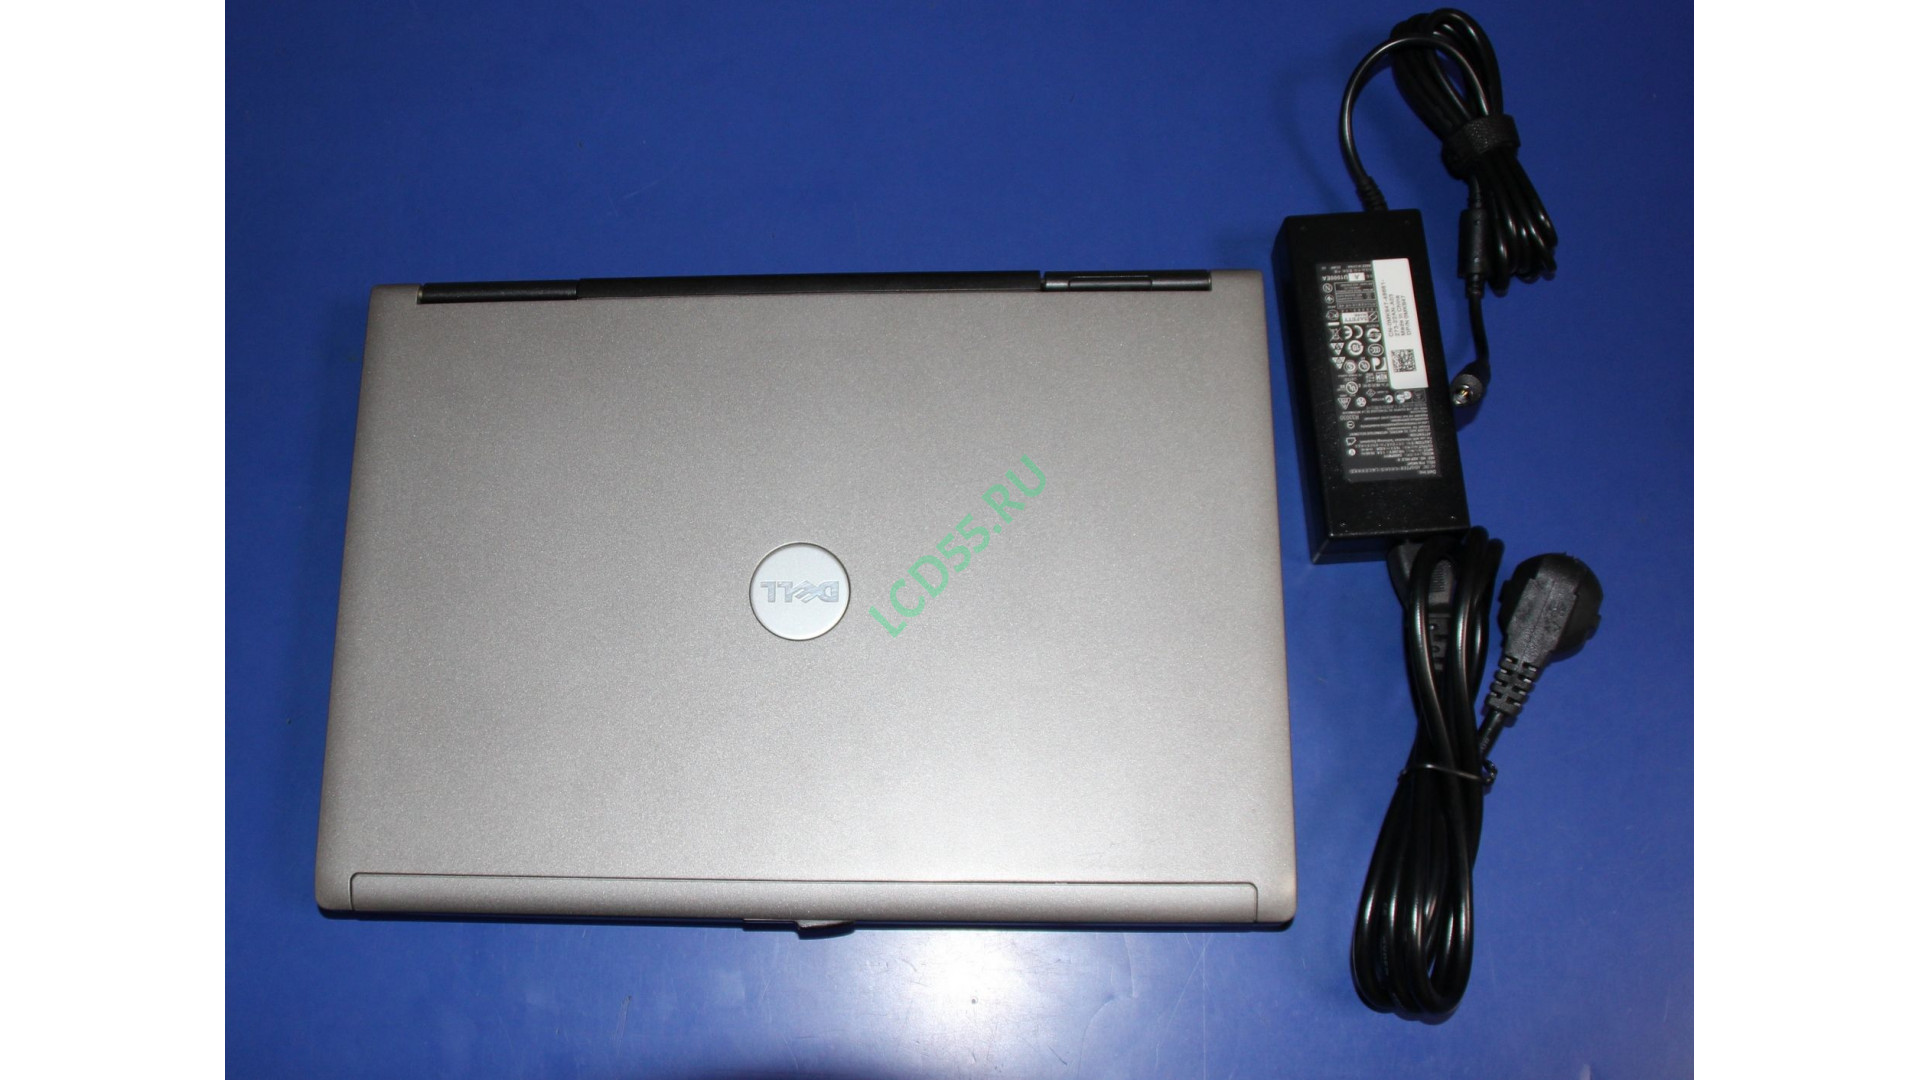 Ноутбук Dell Latitude D620 (PP18L) б/у с COM портом